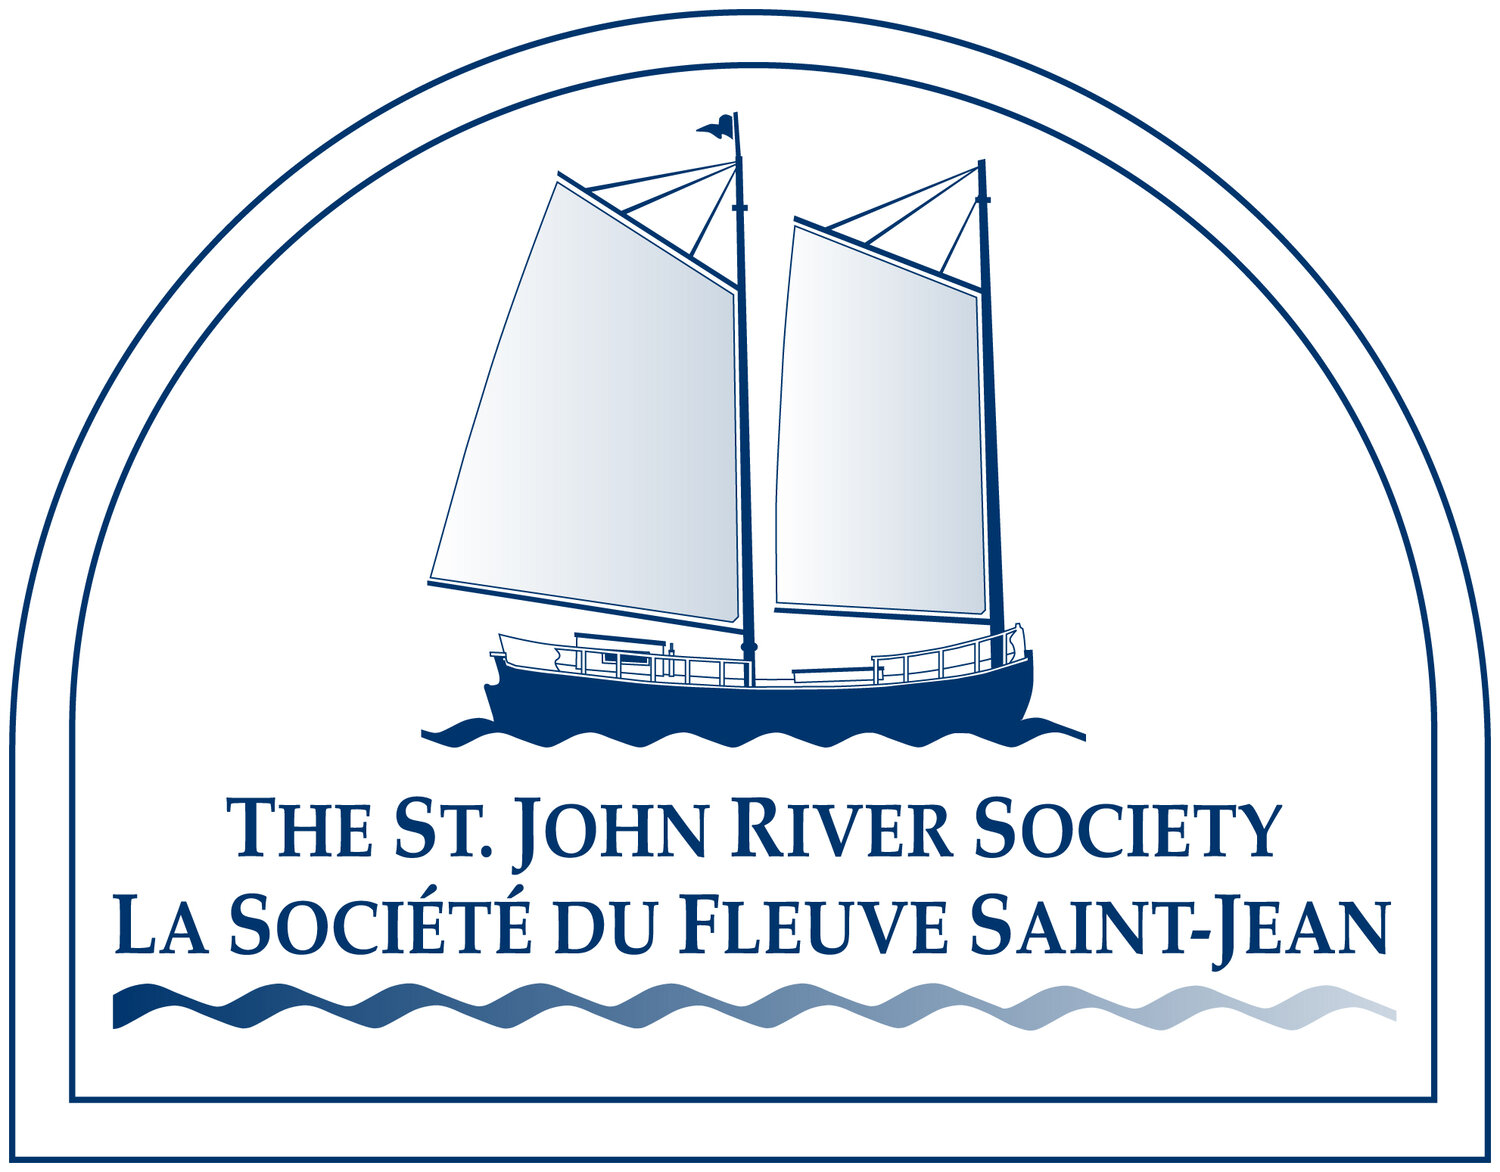 The St. John River Society